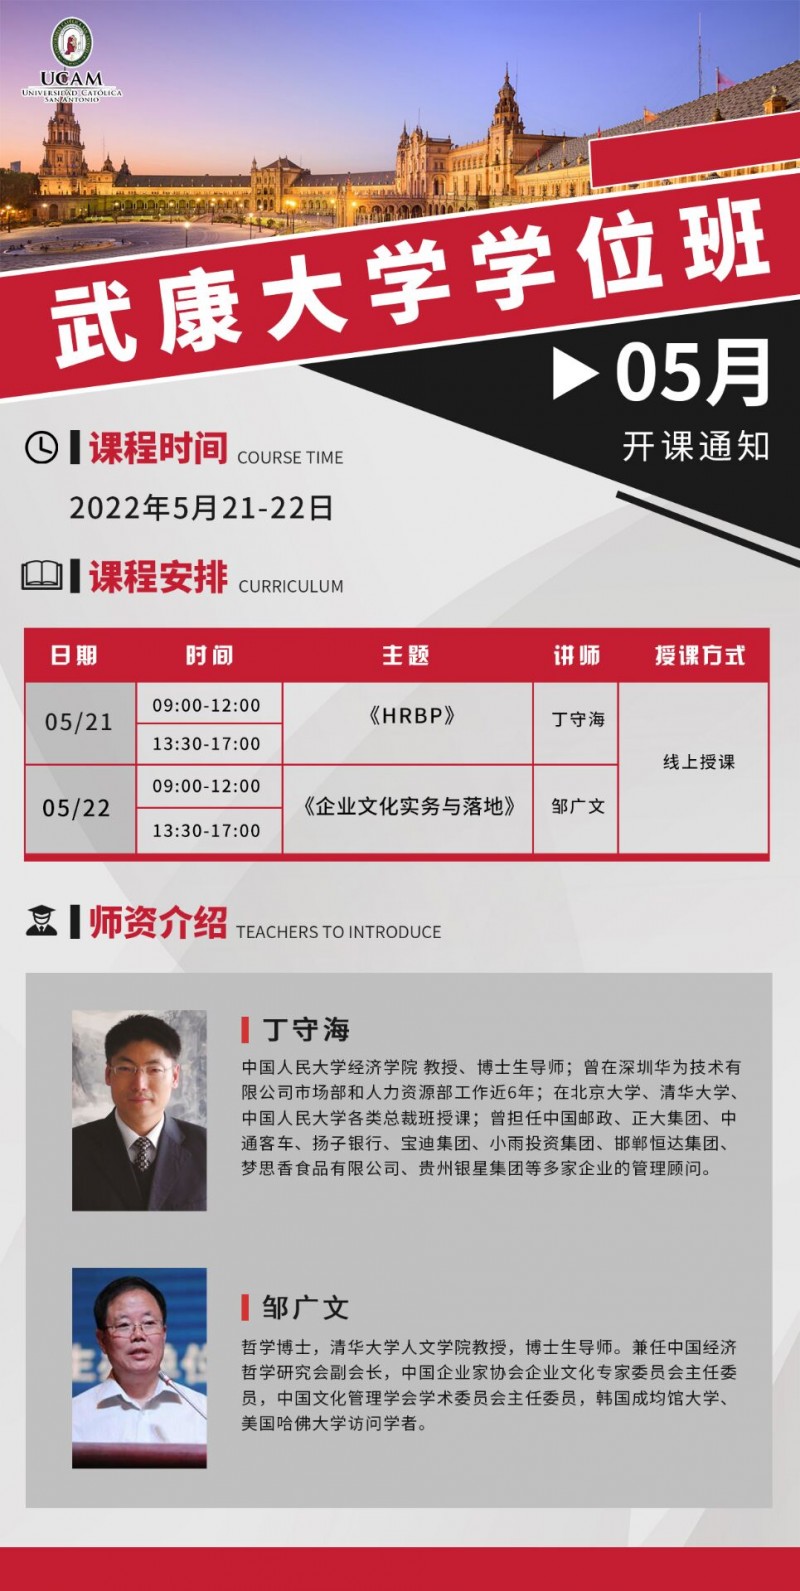 2022年5月21-22日武康大学MBA